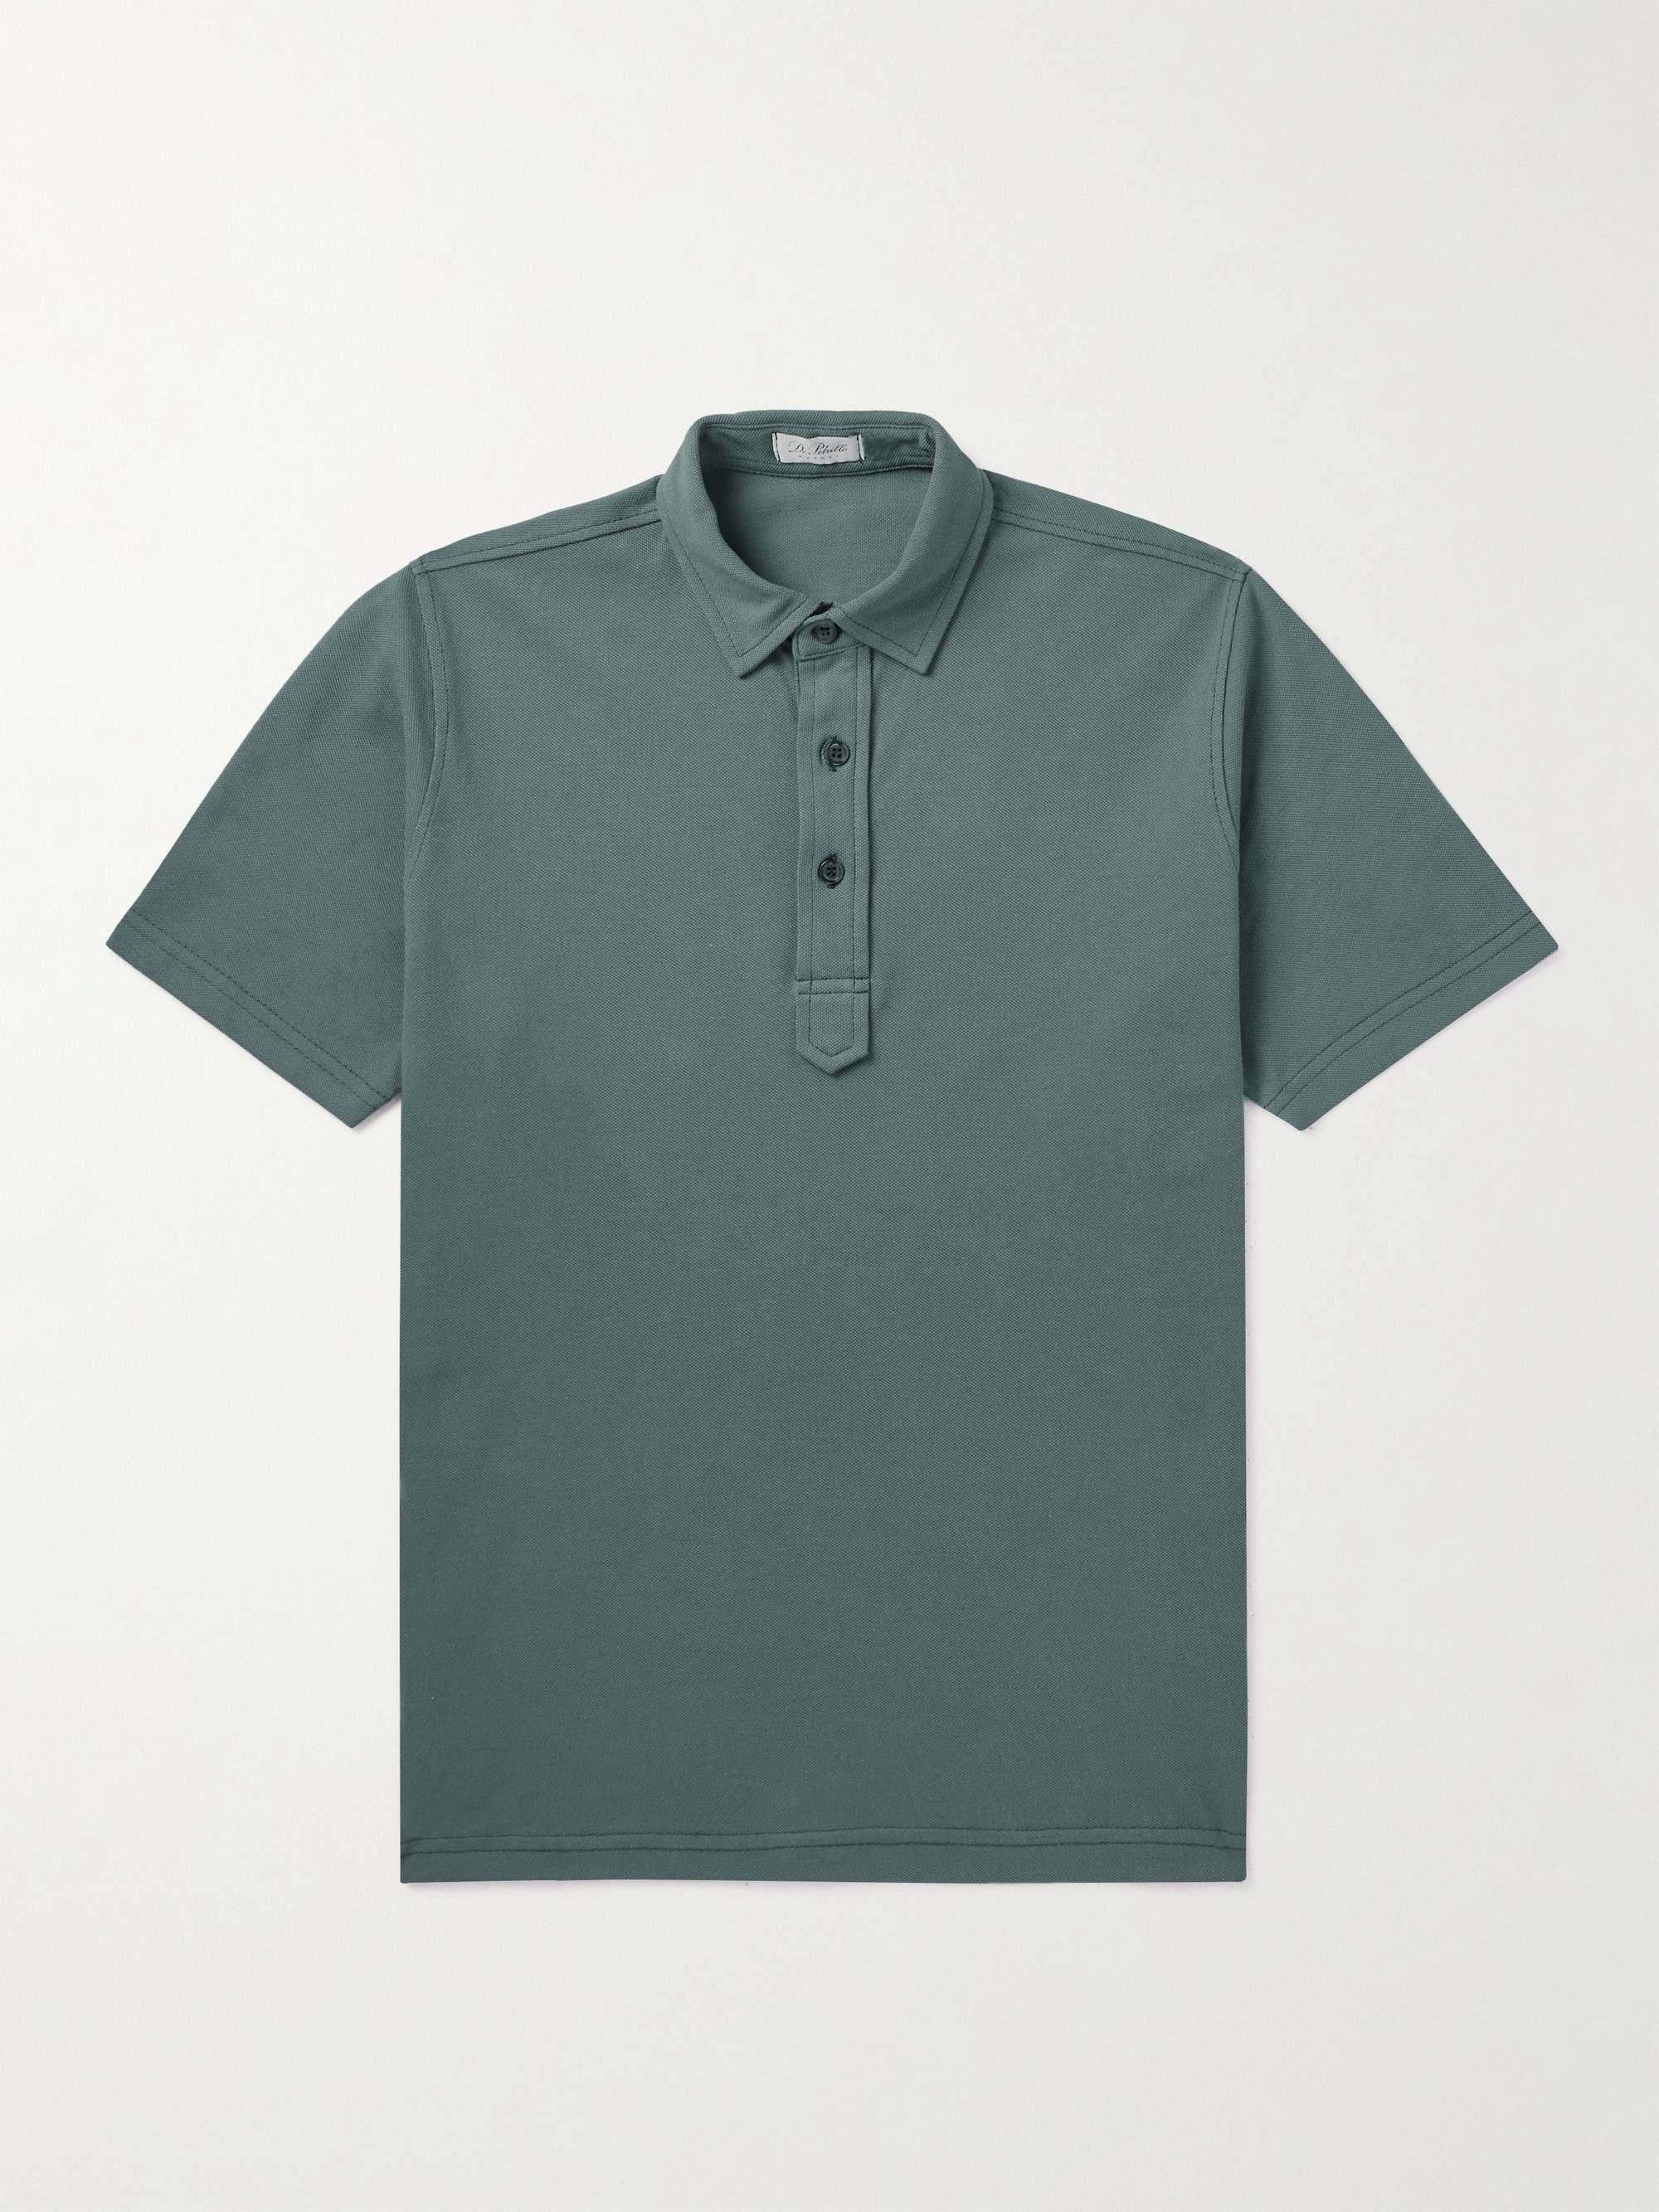 DE PETRILLO Slim-Fit Cotton-Piqué Polo Shirt for Men | MR PORTER